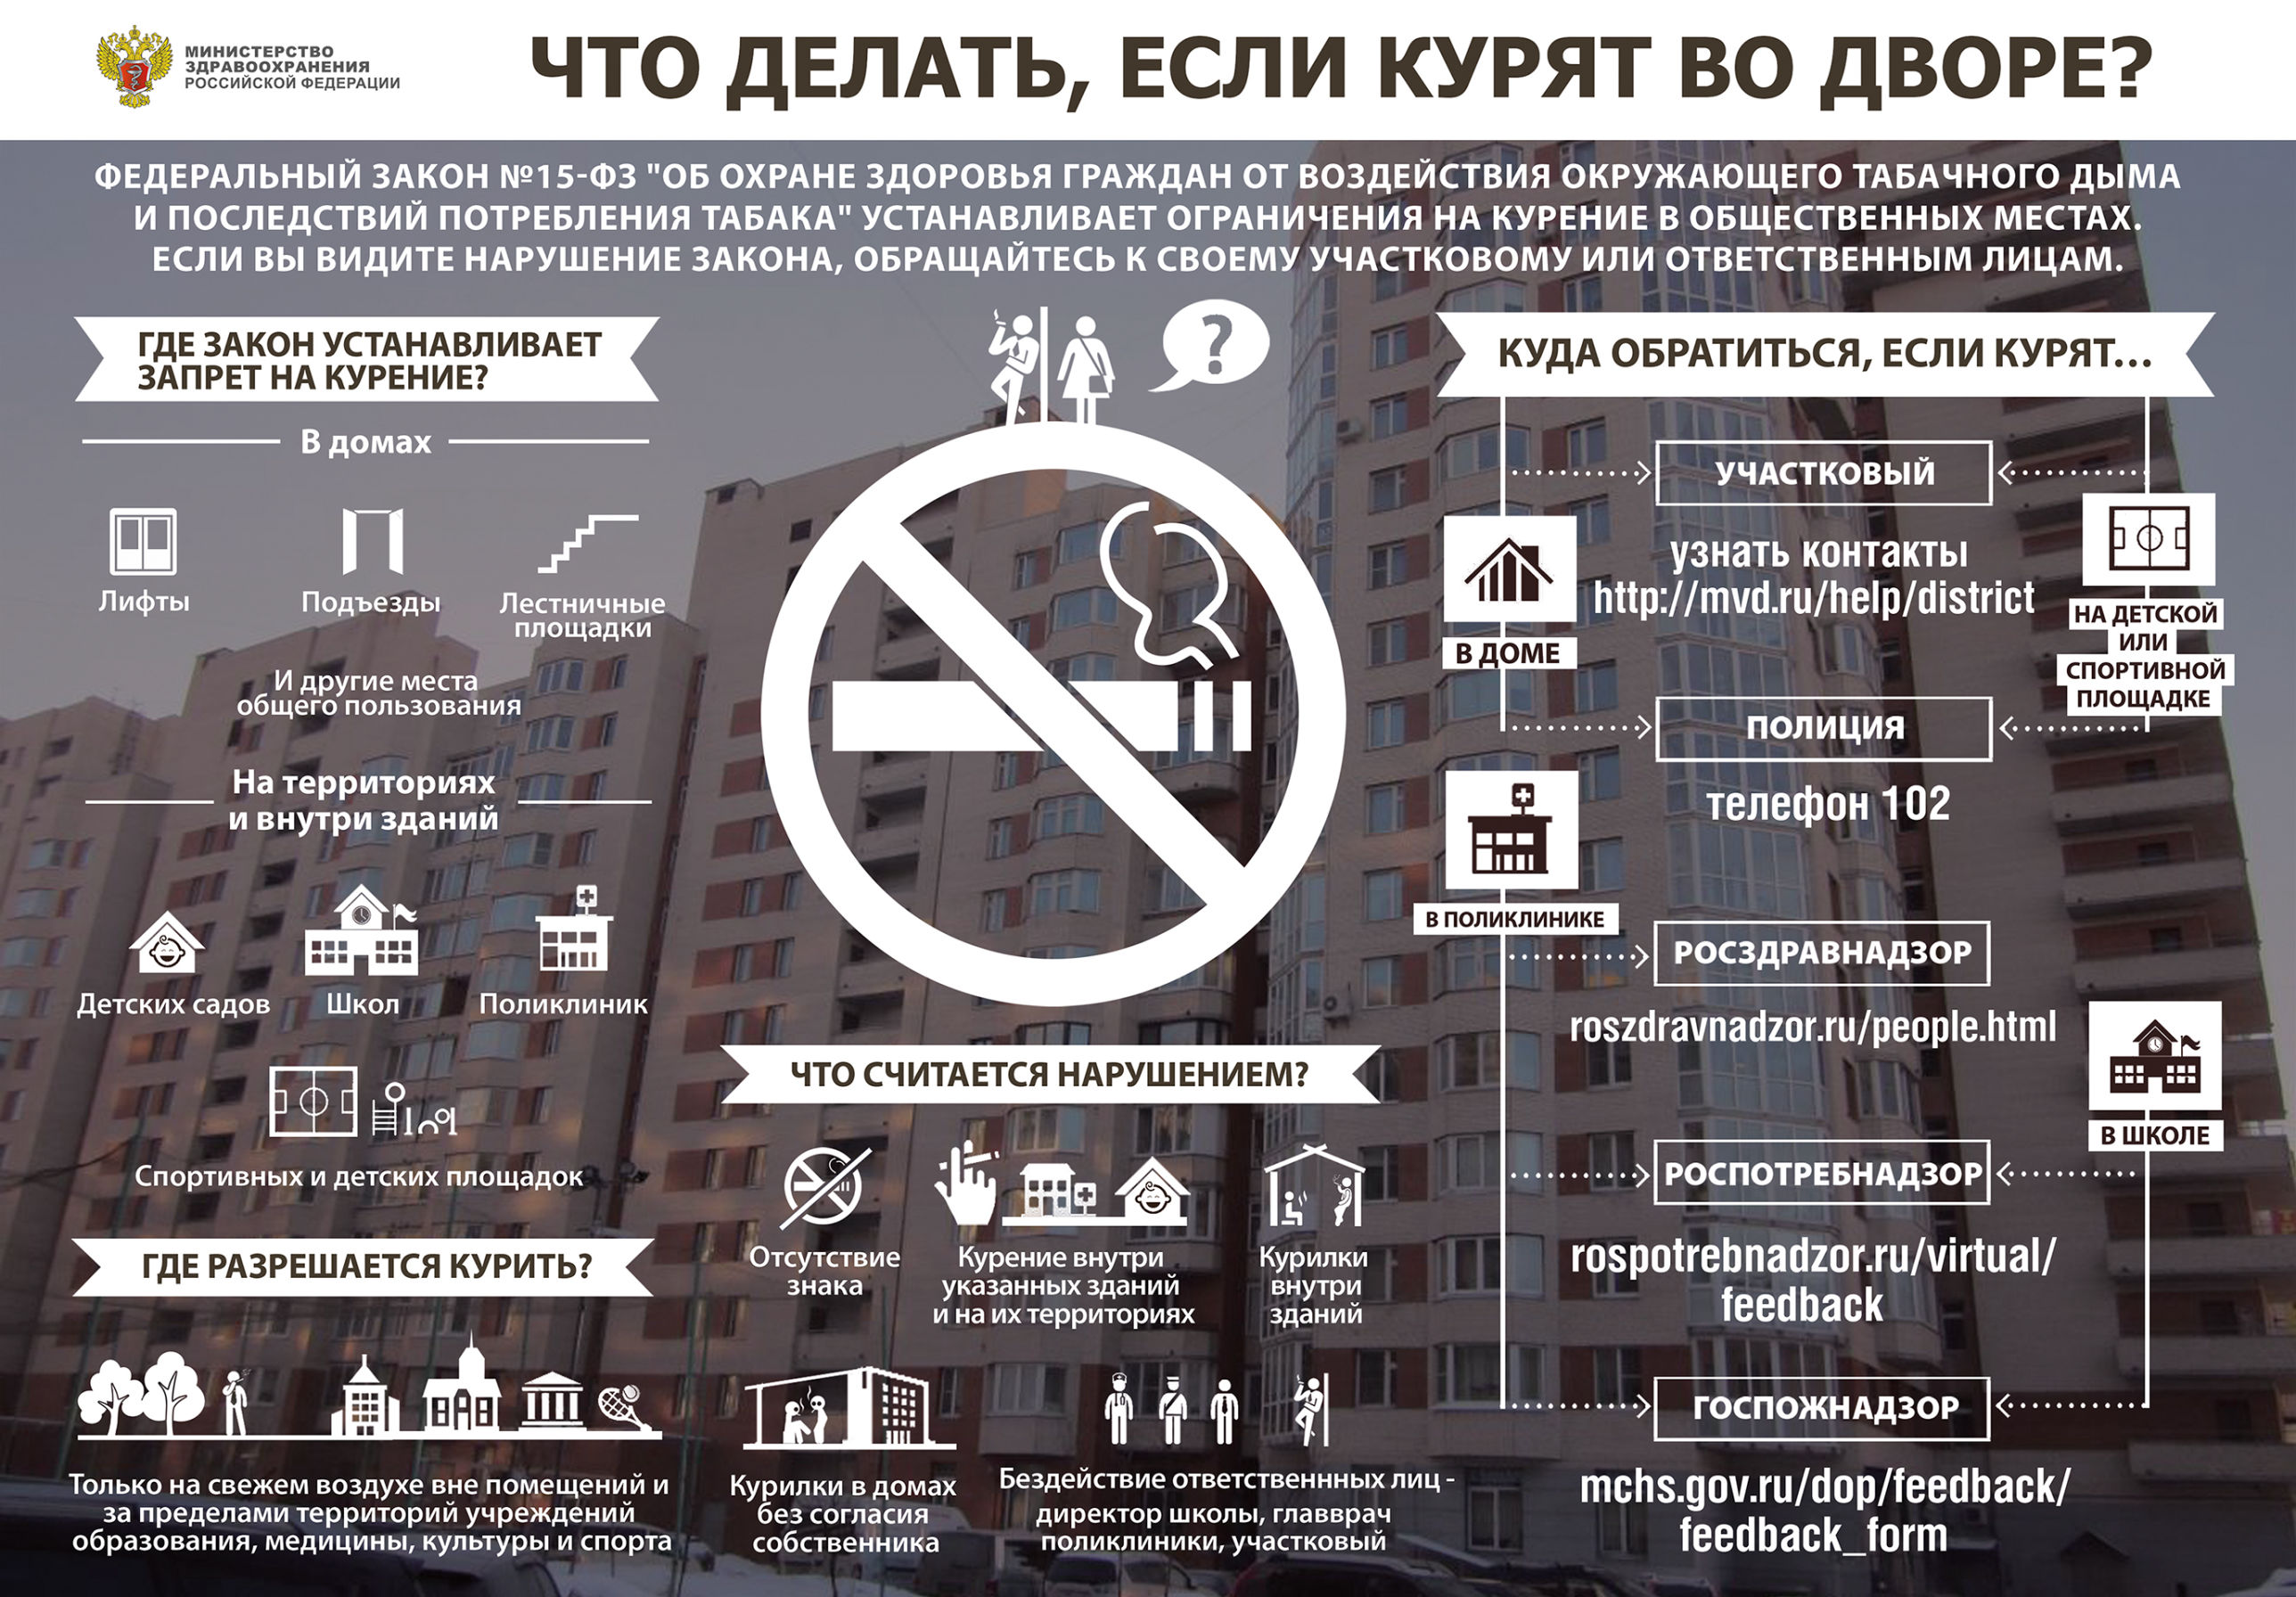 От 23 июня 2014 г. Закон о курении. Запрет курения в общественных местах. Закон о запрете курения в общественных местах. Законодательство о курении в общественных местах.